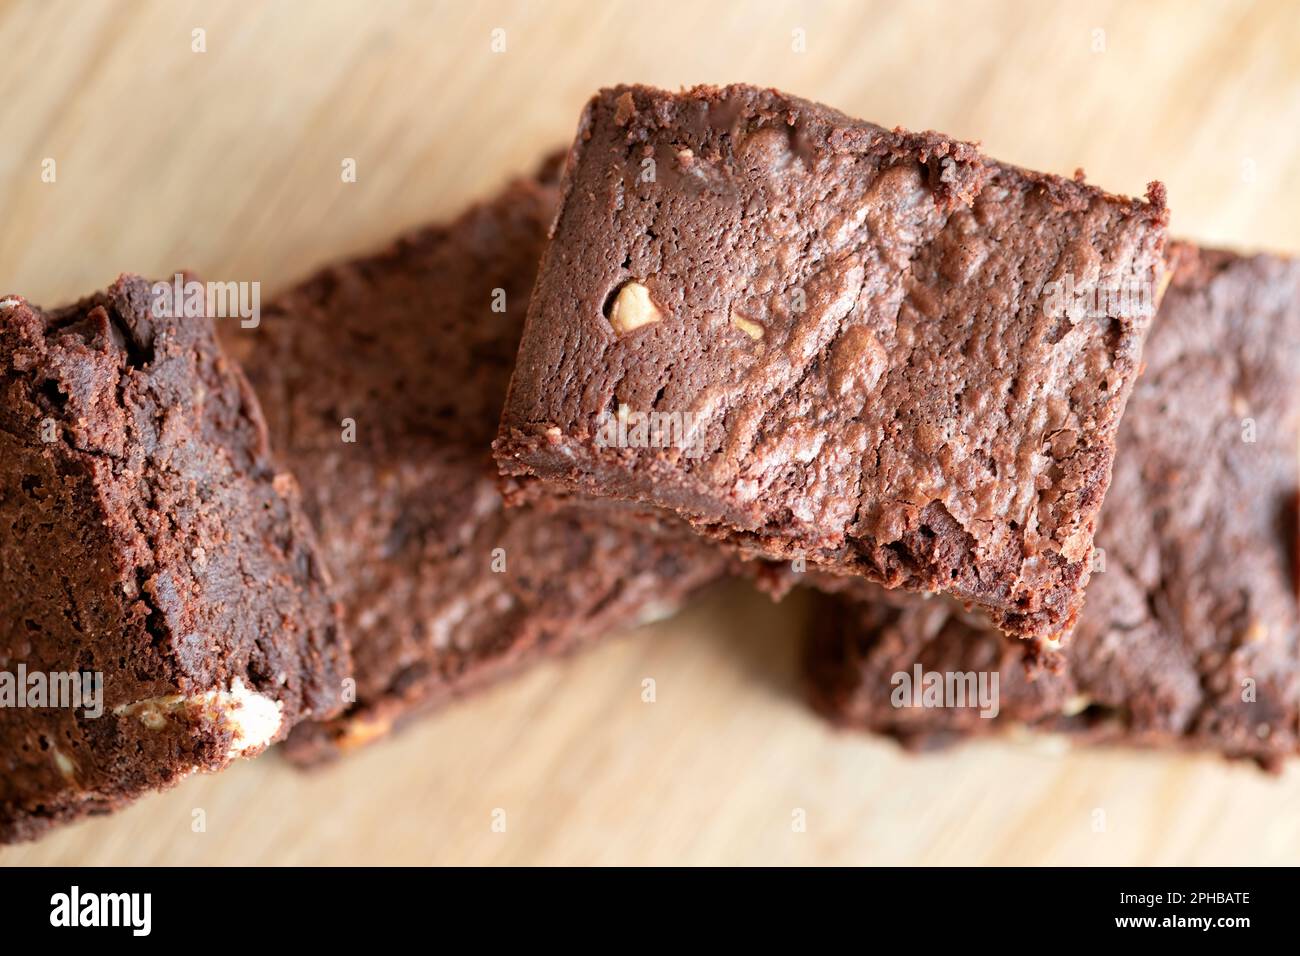 Eine Charge frisch gebackener dreifach-Schokoladen-Brownies auf einer Holzplatte. Die Brownies sind noch warm und klebrig. Ein Genuss Stockfoto